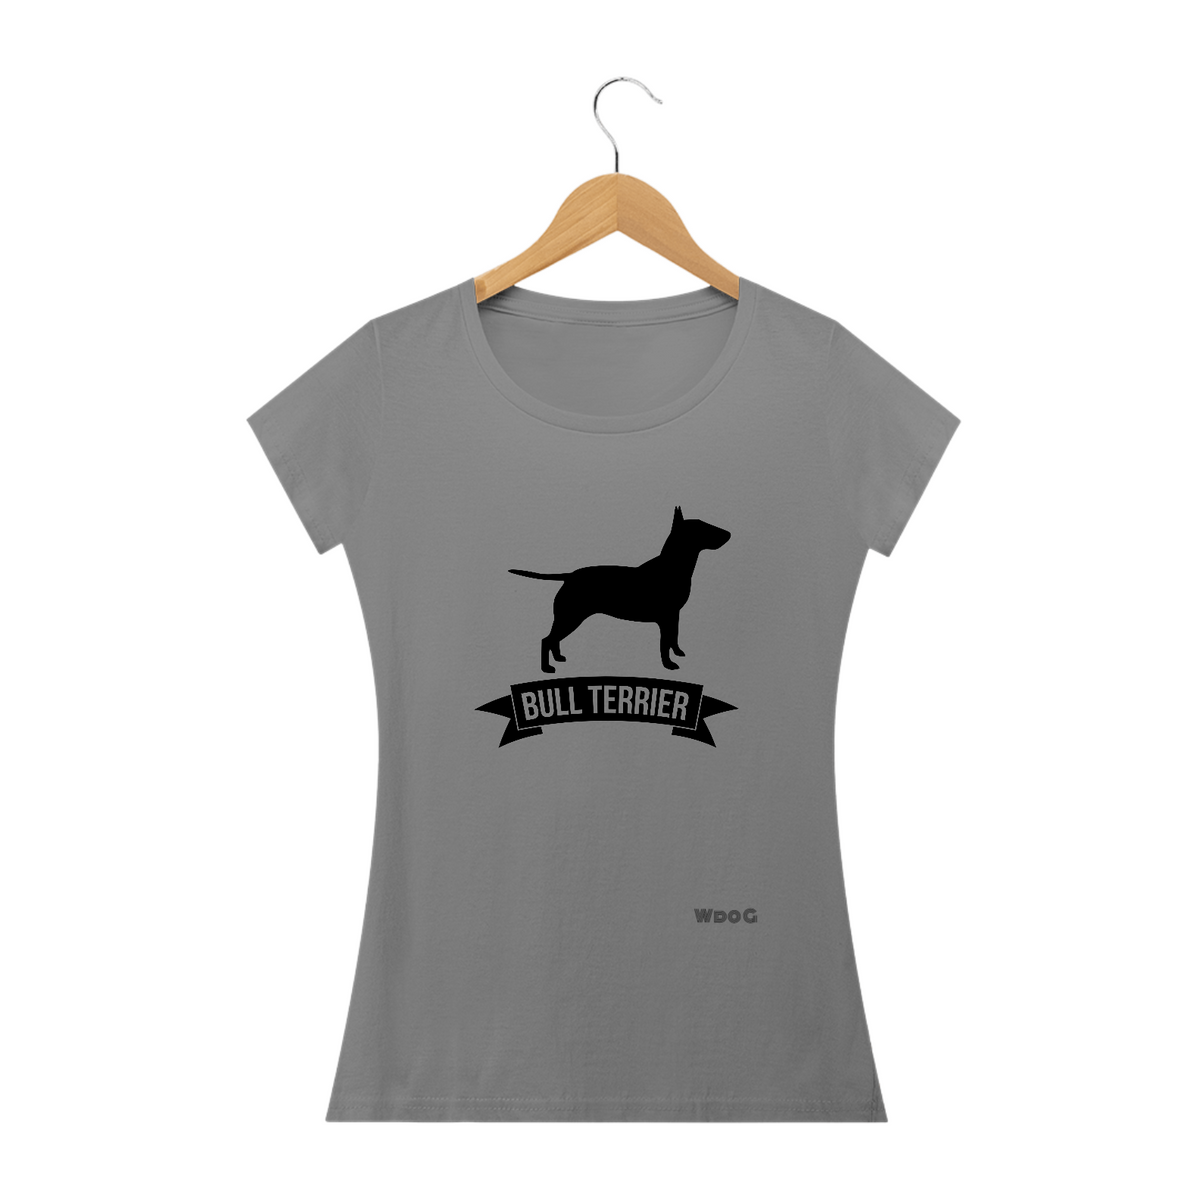 Nome do produto: Bull terrier competição / t-shirt Women Bull terrier